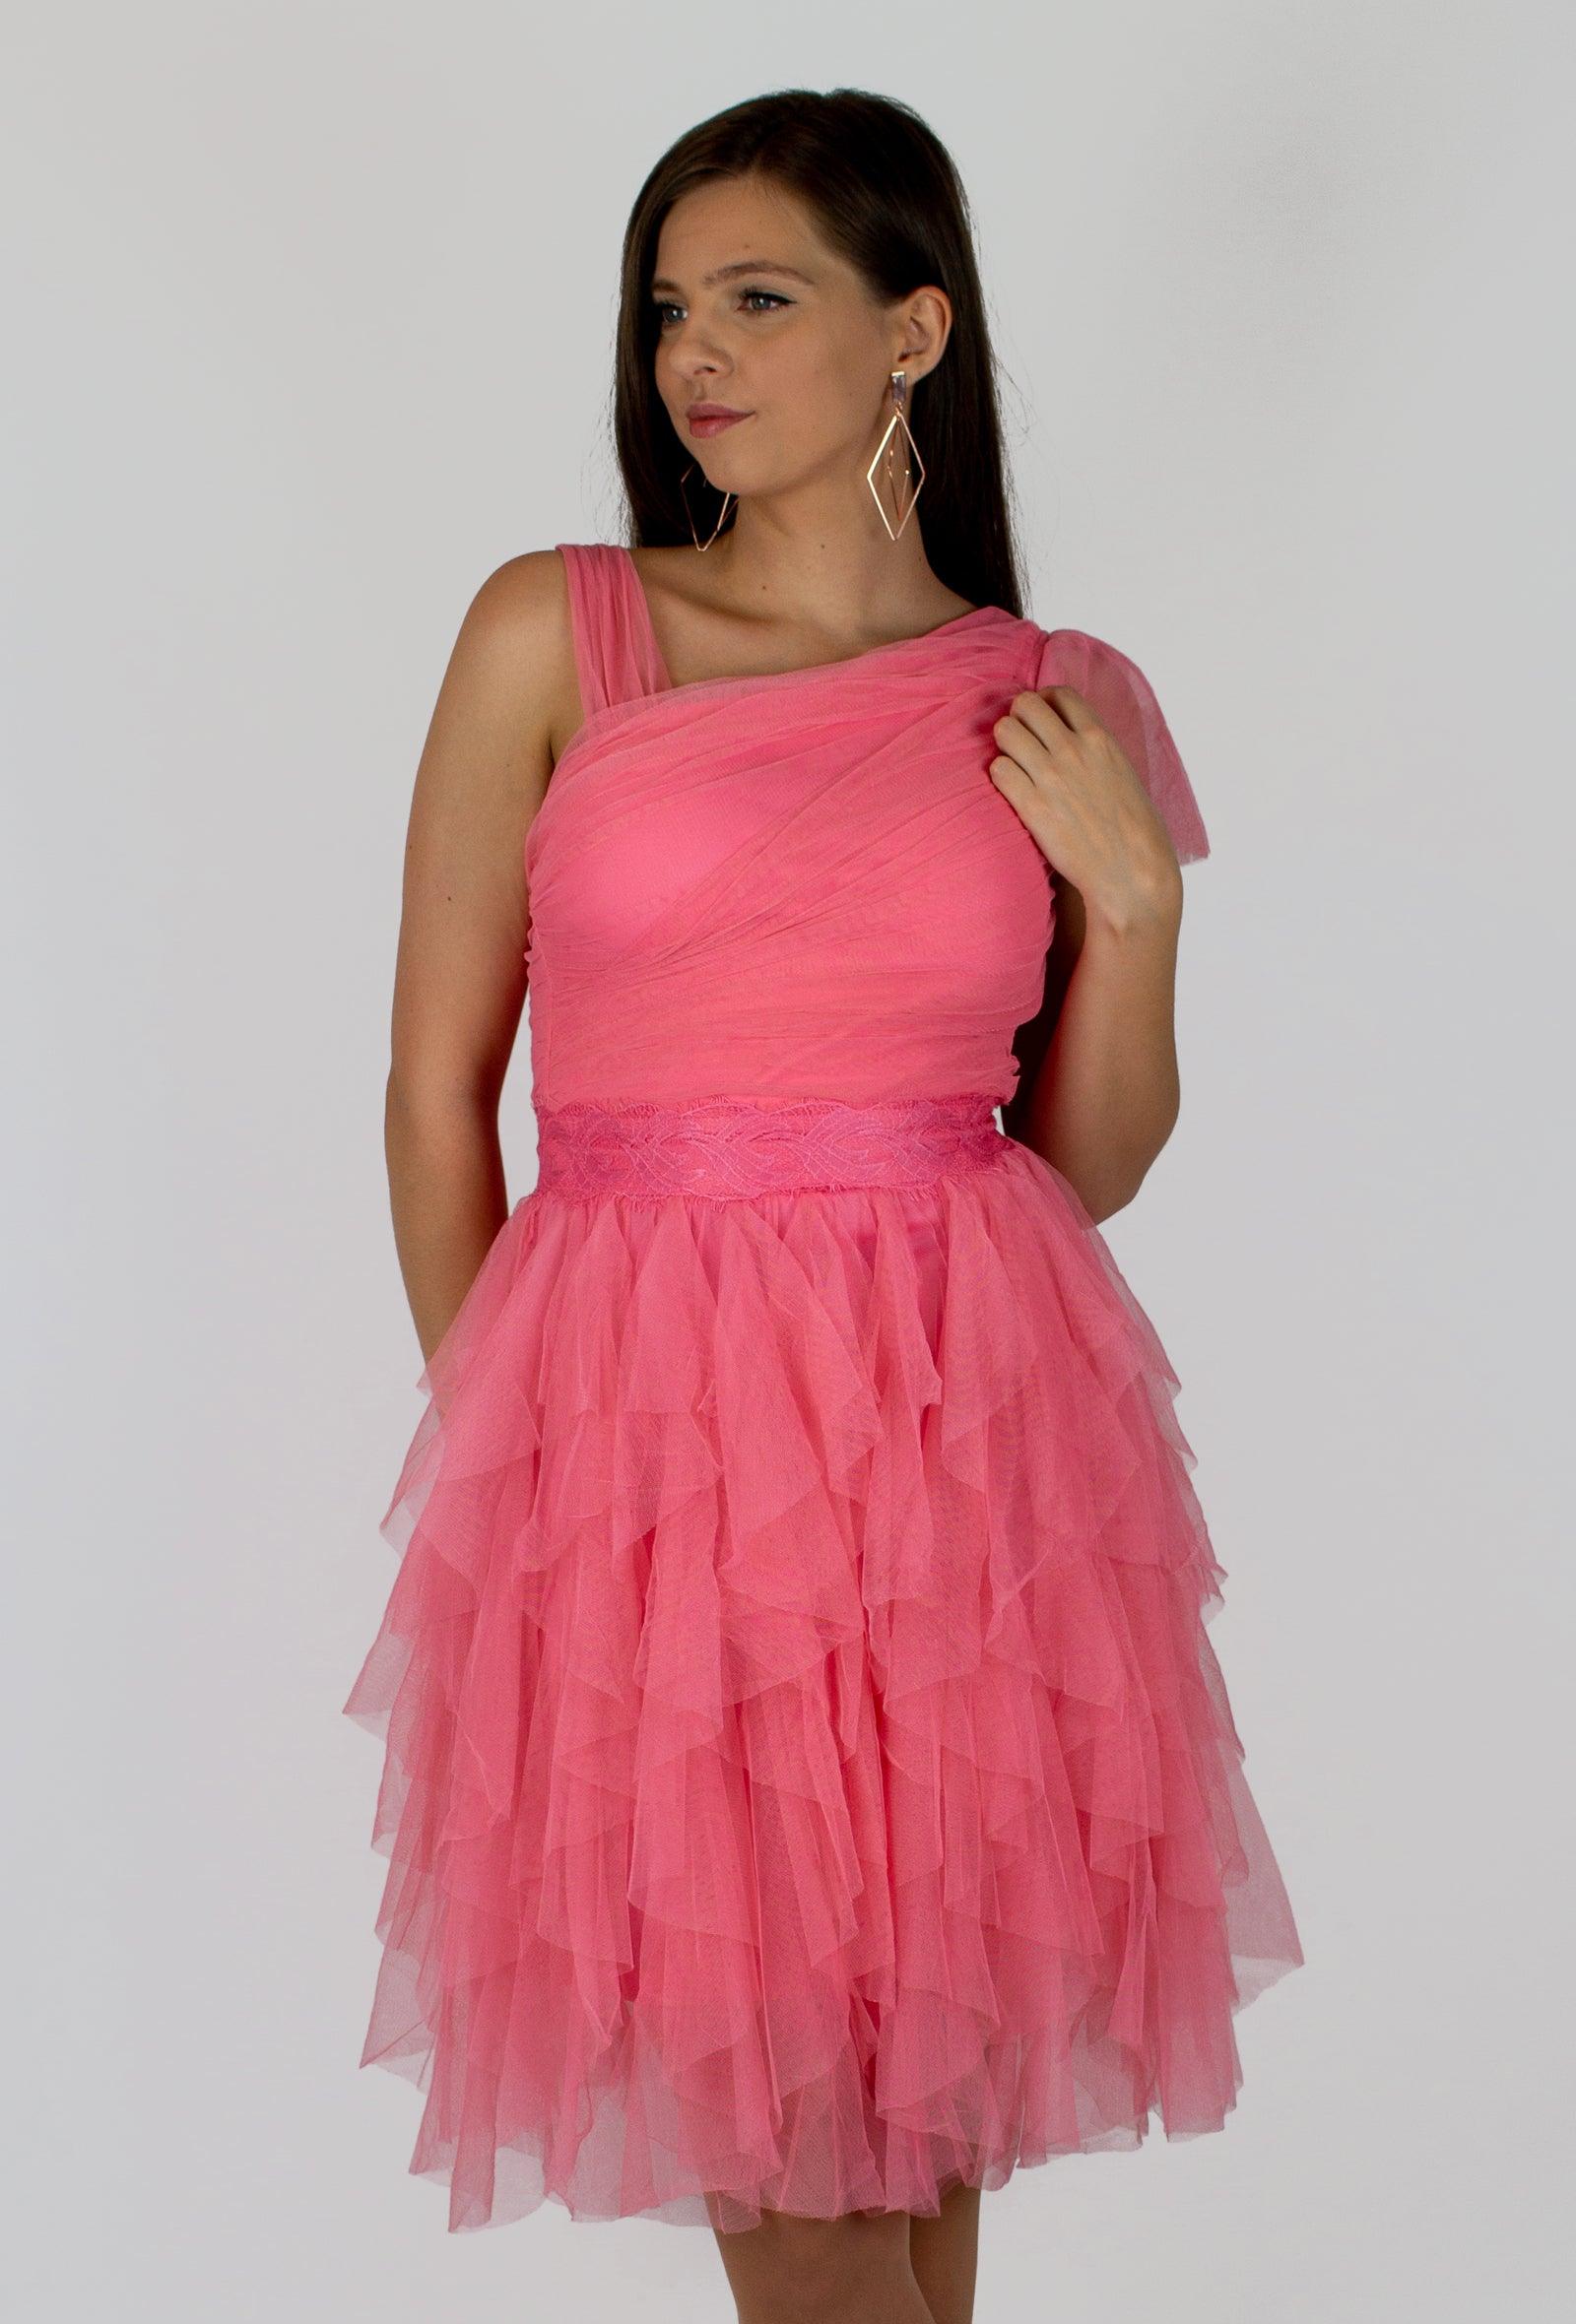 Rózsaszín ruha - Chili dresses - Ruha